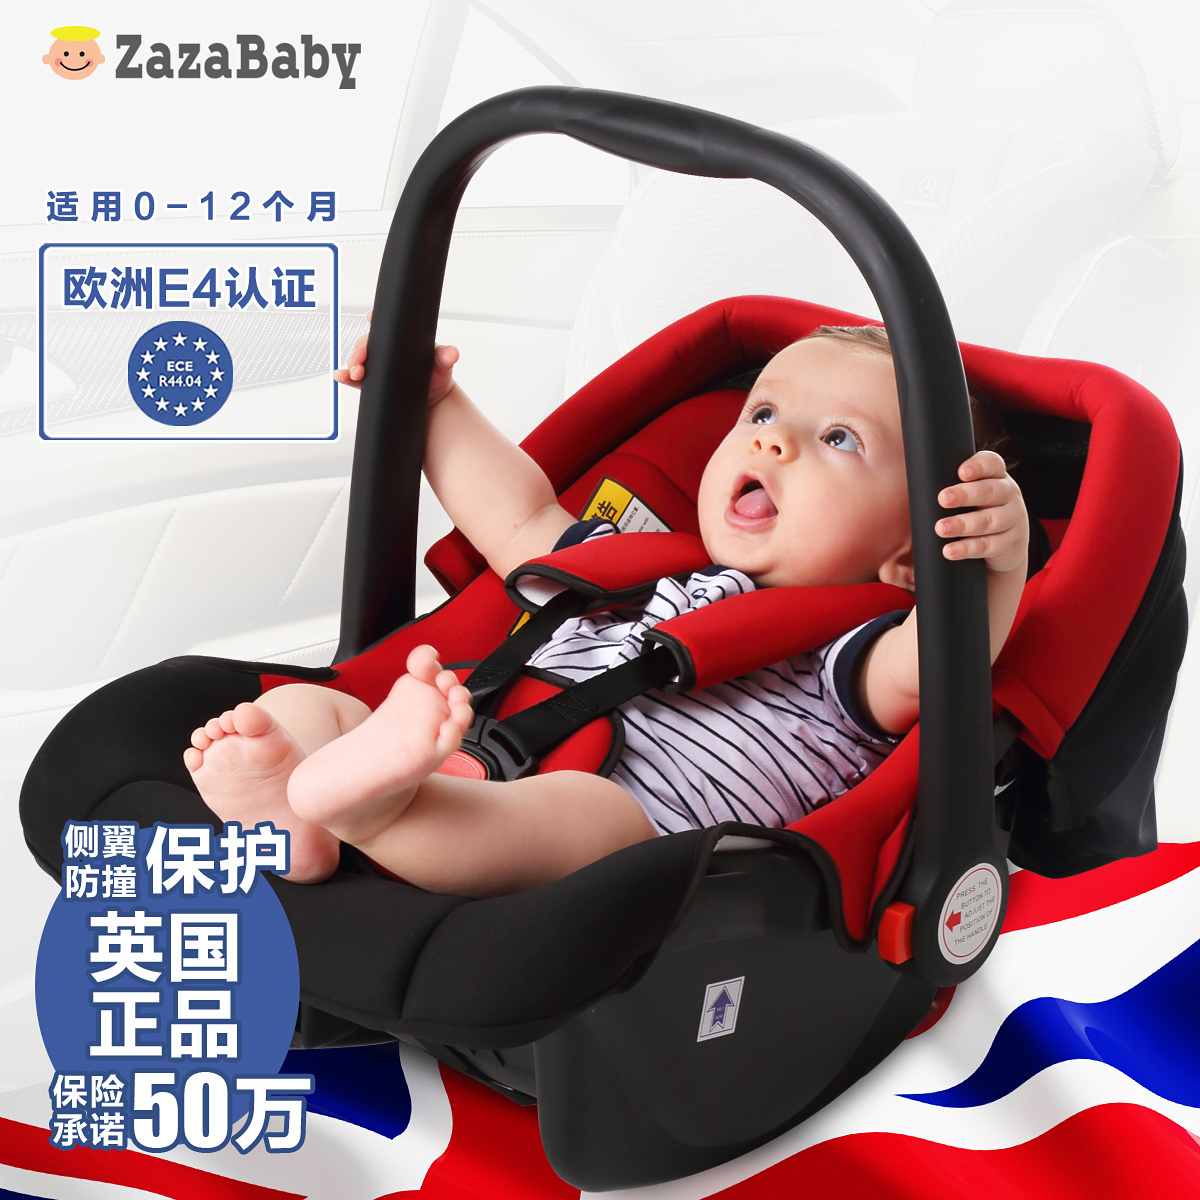 zazababy新生婴儿童汽车安全座椅 婴儿车载提篮 提篮式安全座椅